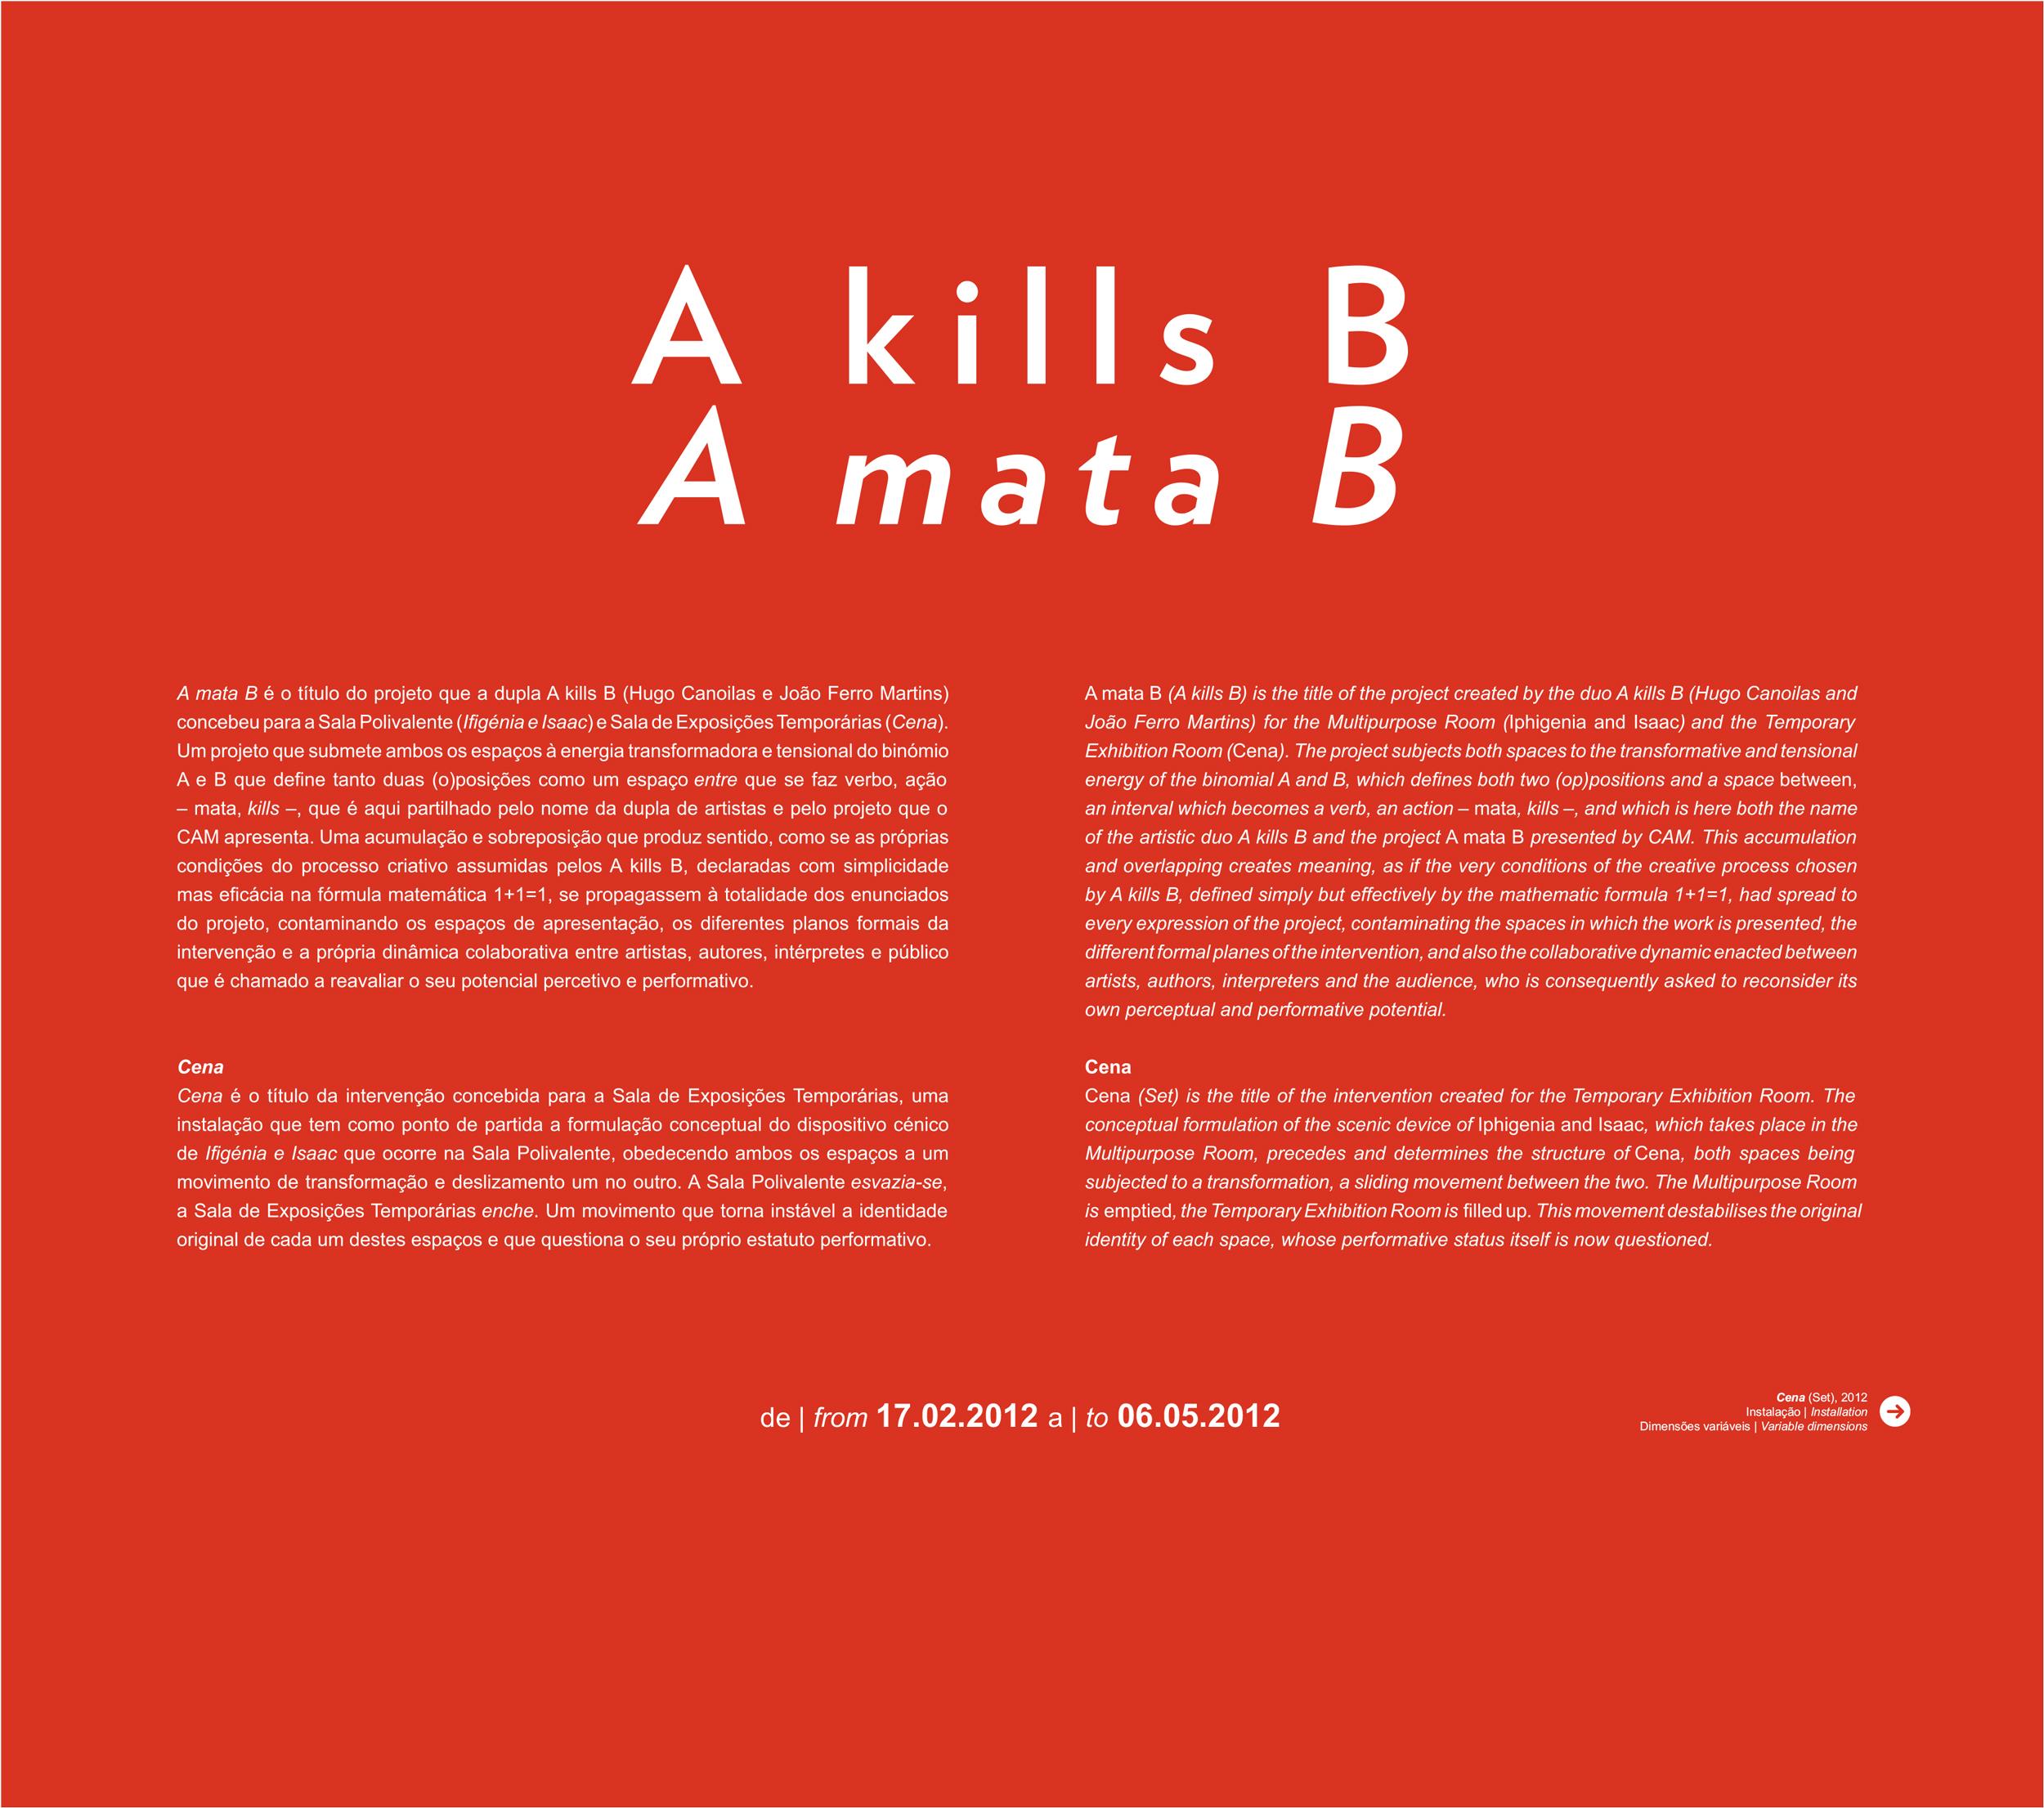 A kills B / A mata B